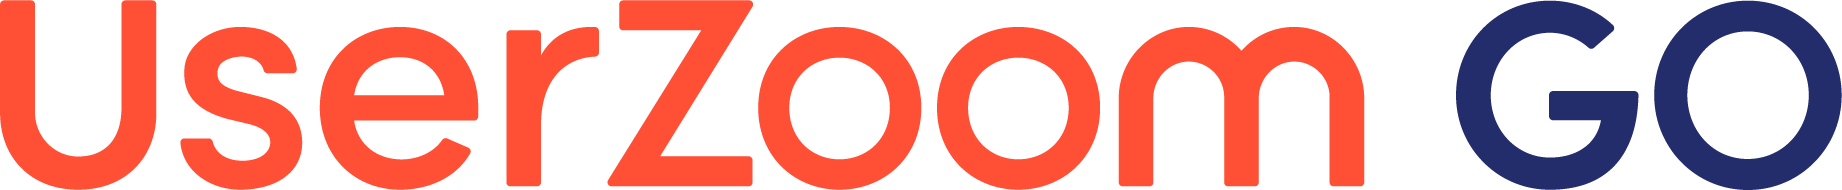 user zoom logo